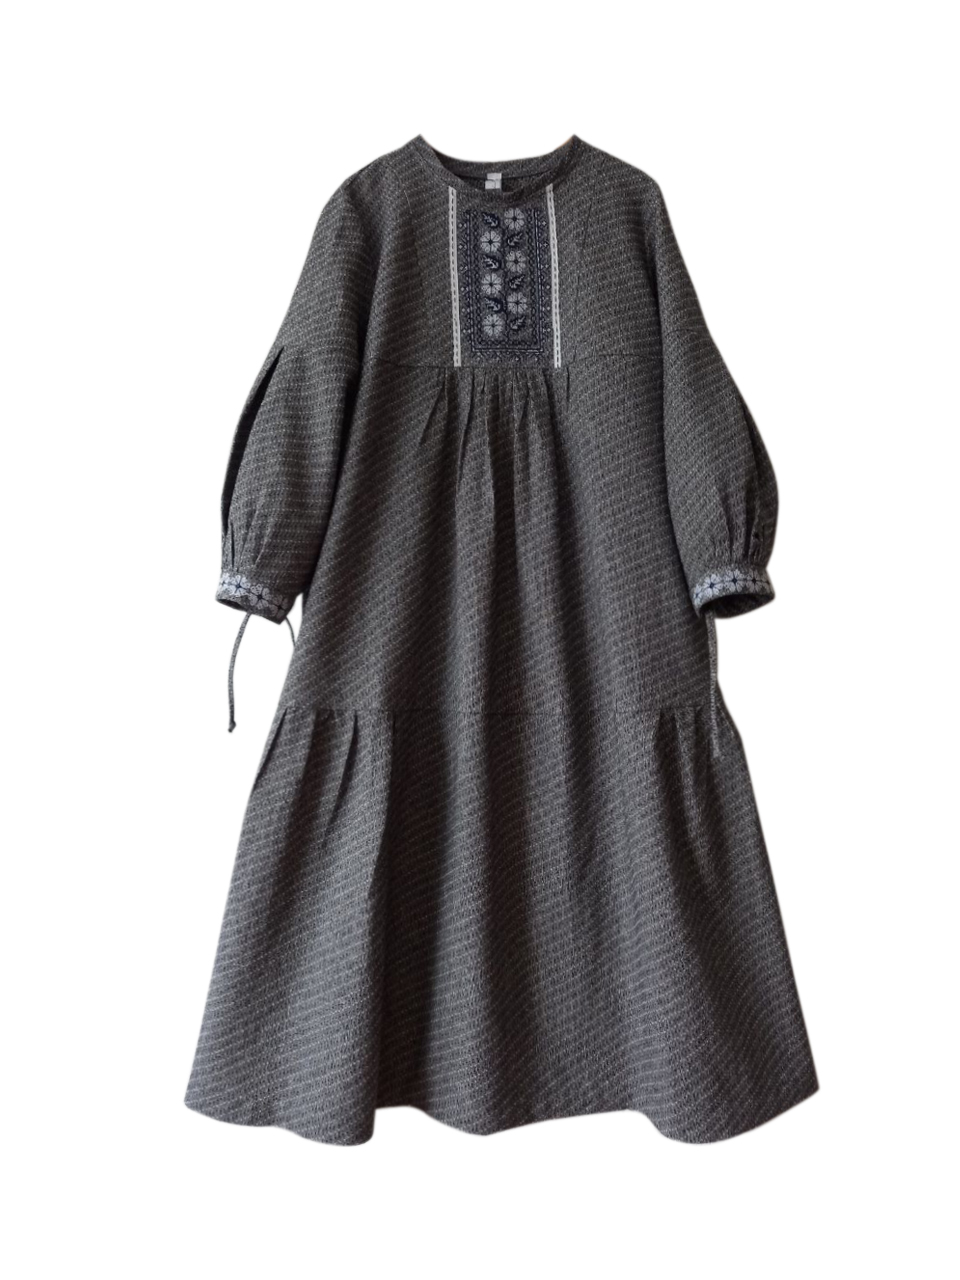 Аленушка. Платье миди с вышивкой в этностиле PL-42-5304